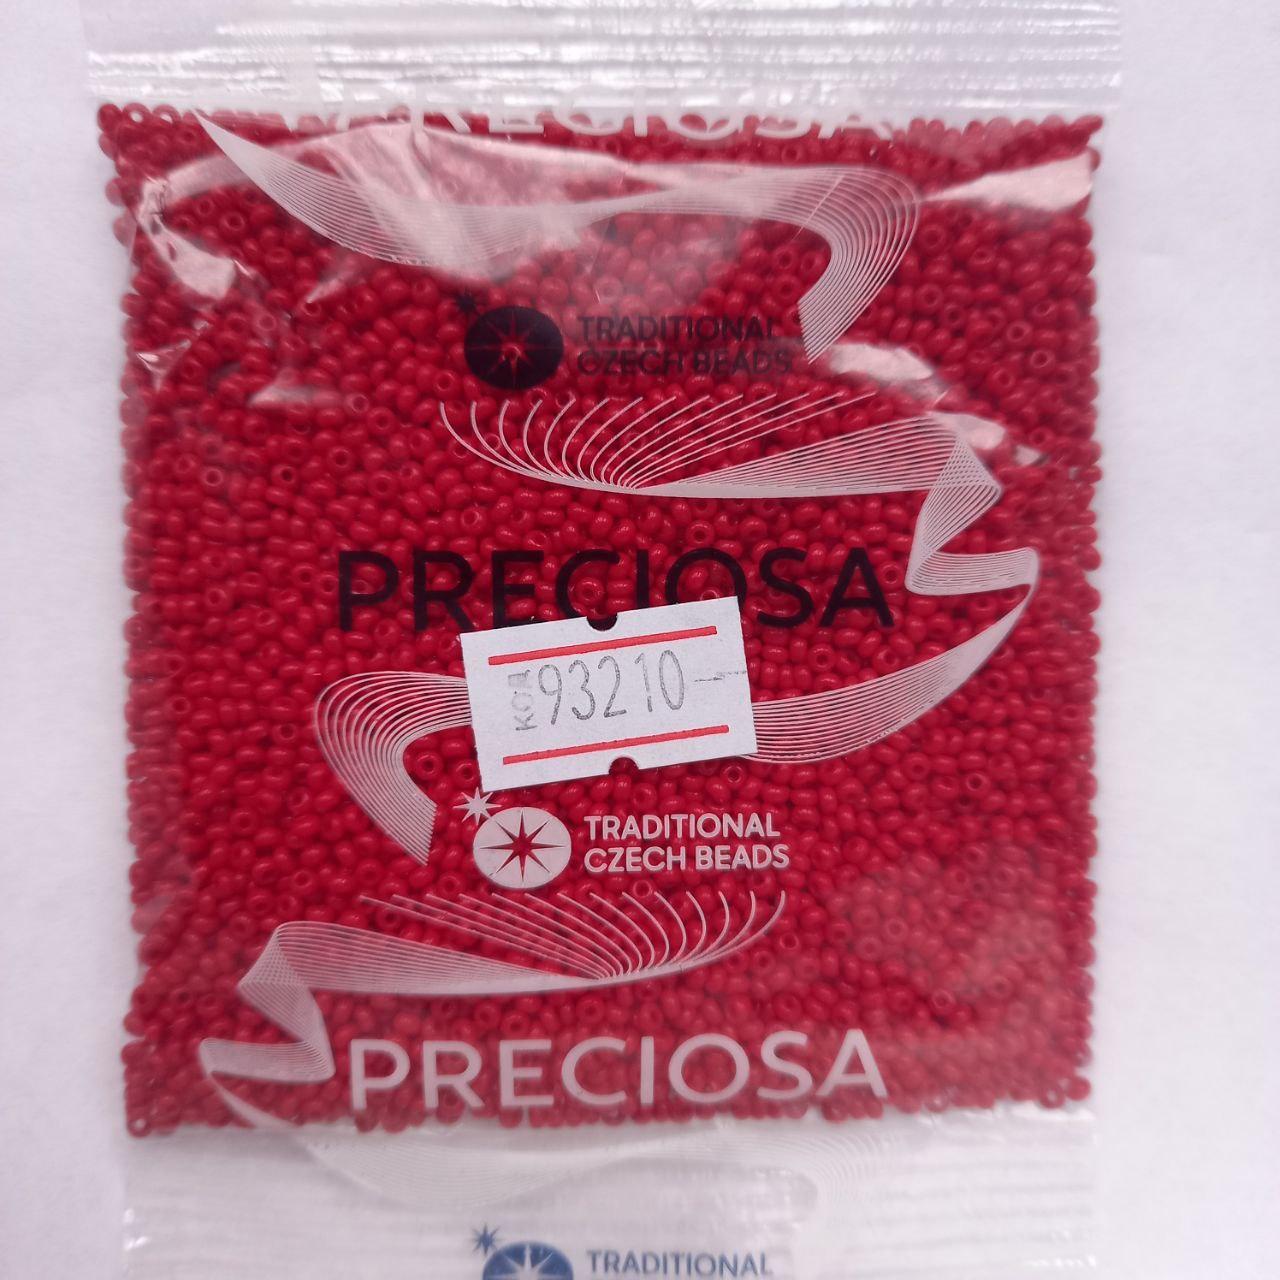 Бісер чеський Preciosa натуральний темно-червоний 50г 10/0 93210